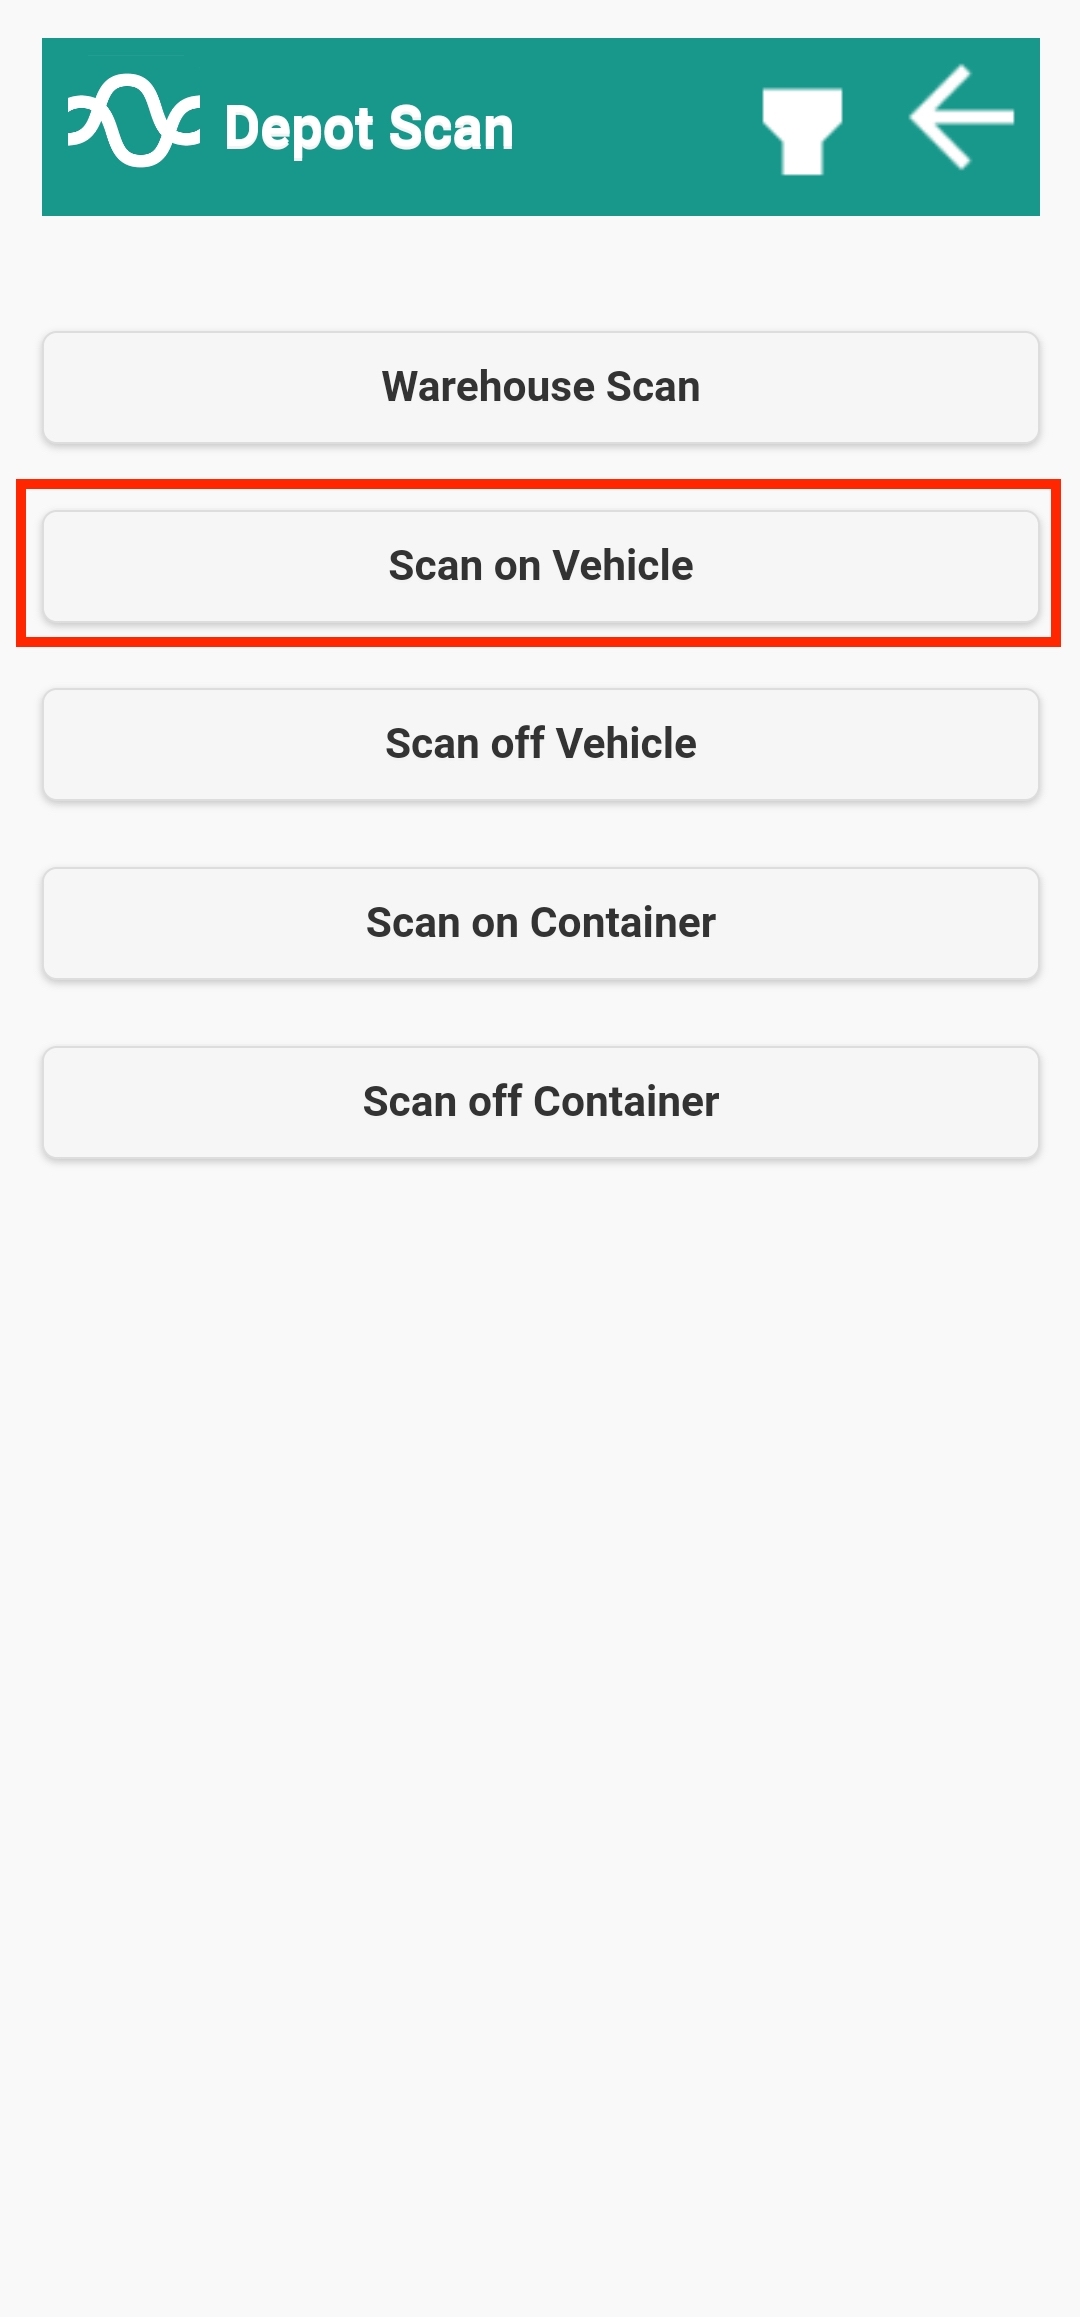 2-scan-on-vehicle-menu-item-screenshot